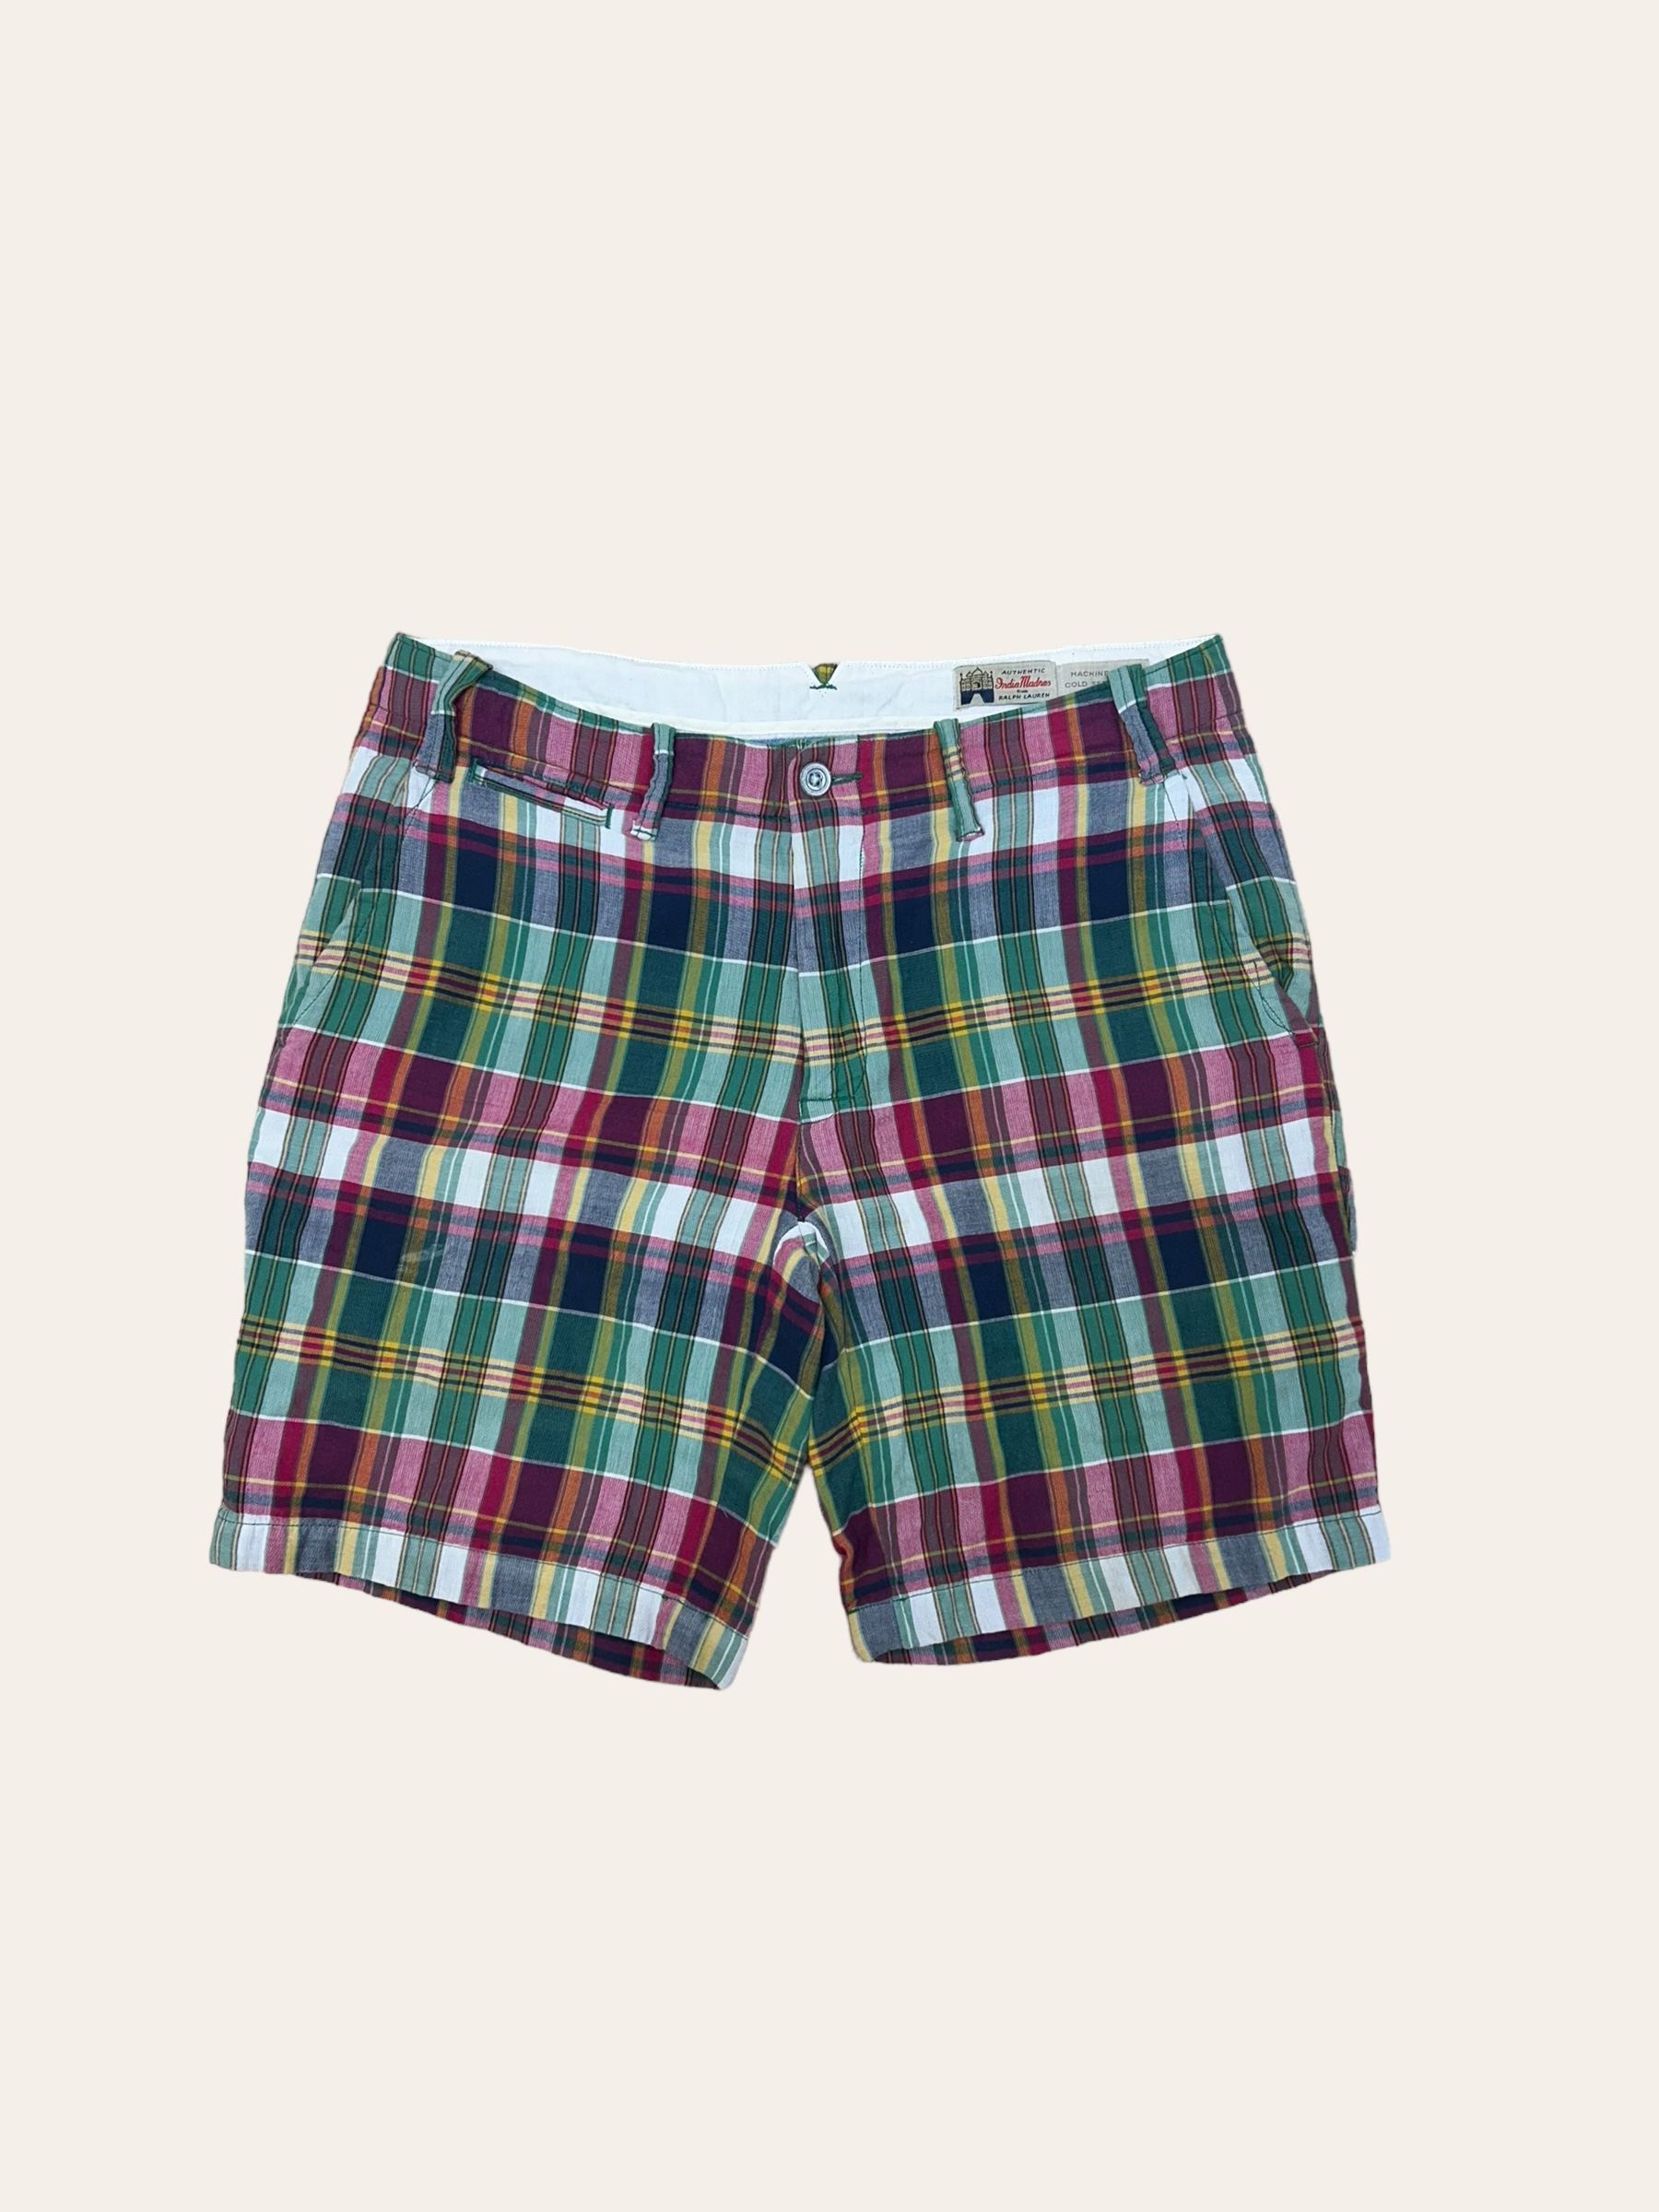 Polo ralph lauren mardras check shorts 32